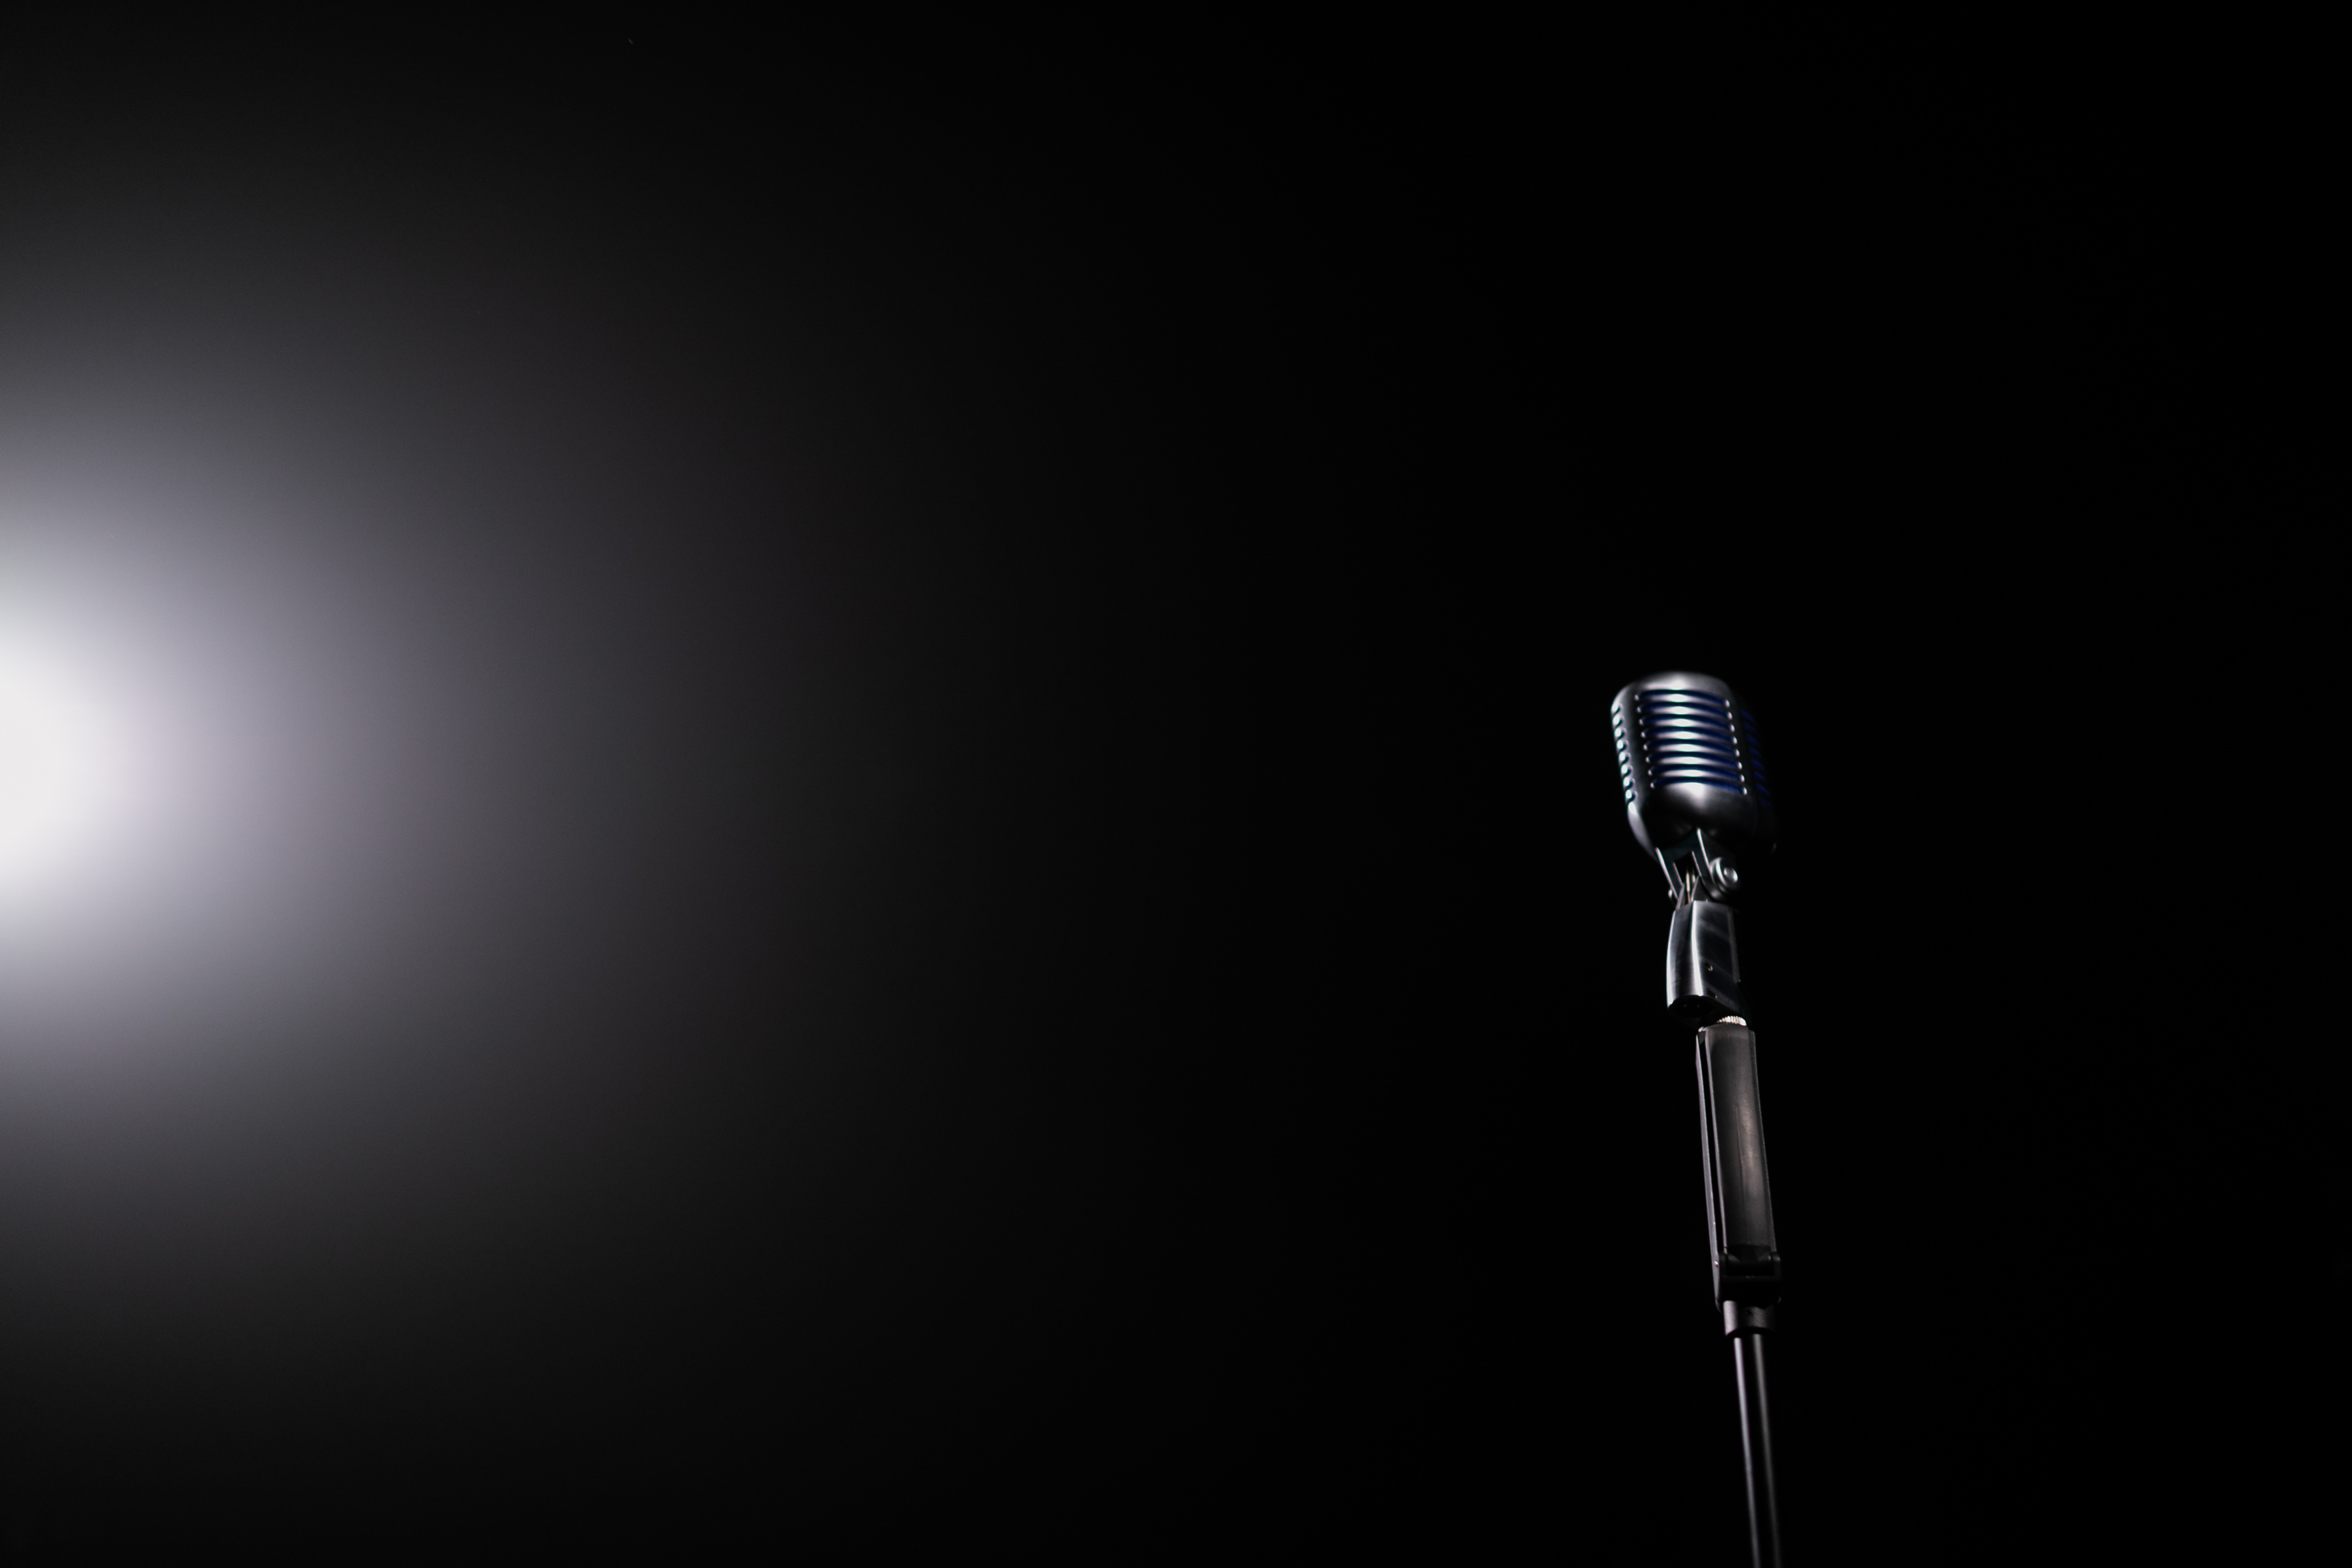  A Silver Retro Microphone